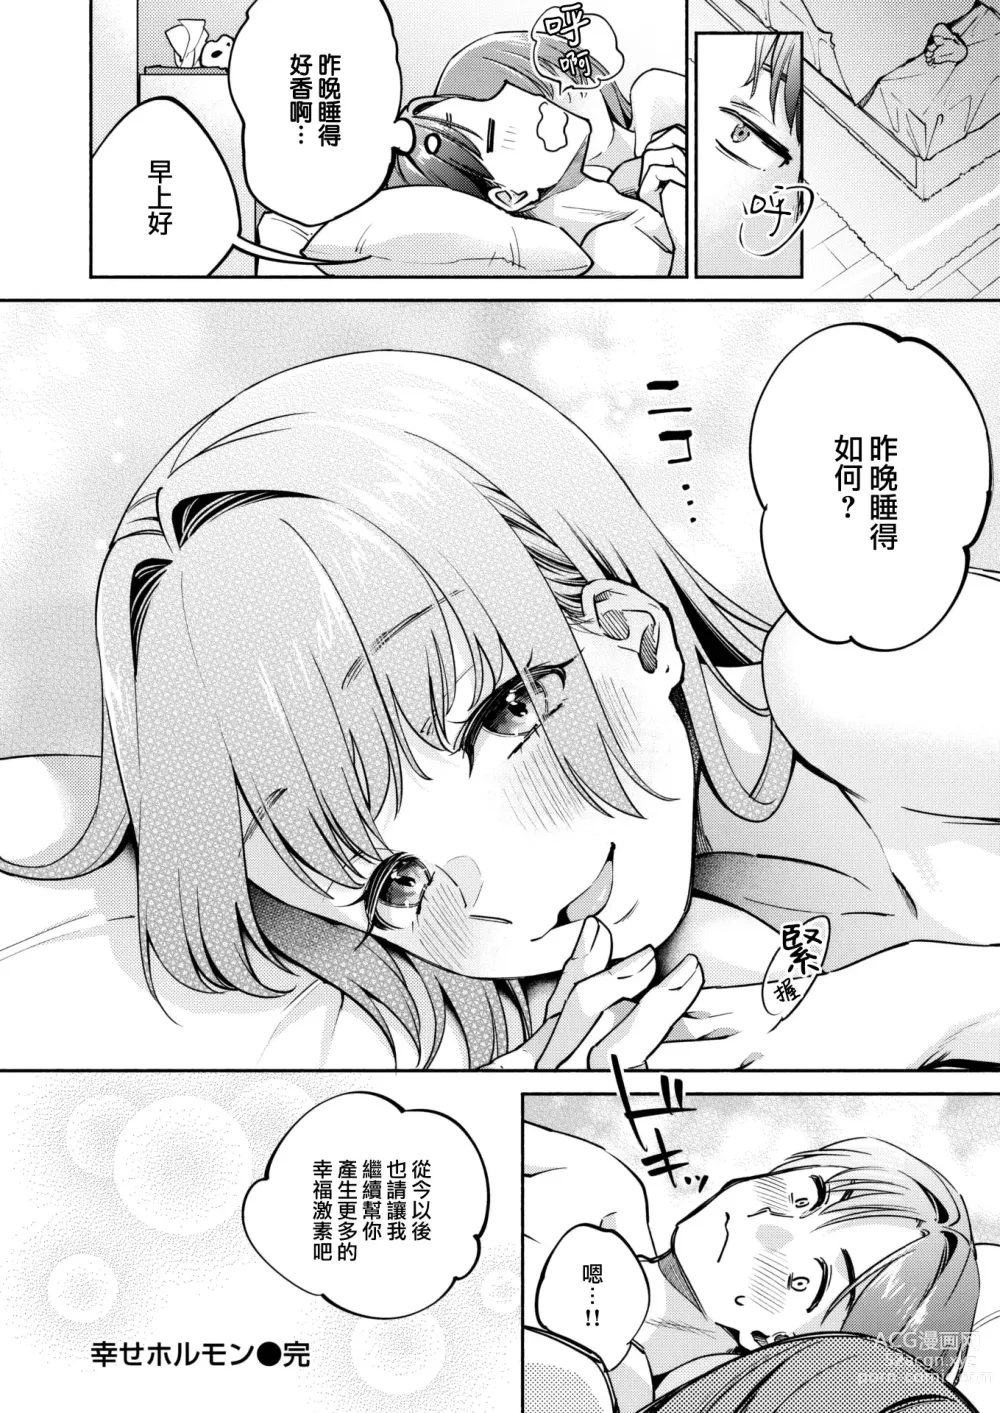 Page 23 of manga Shiawase Hormone